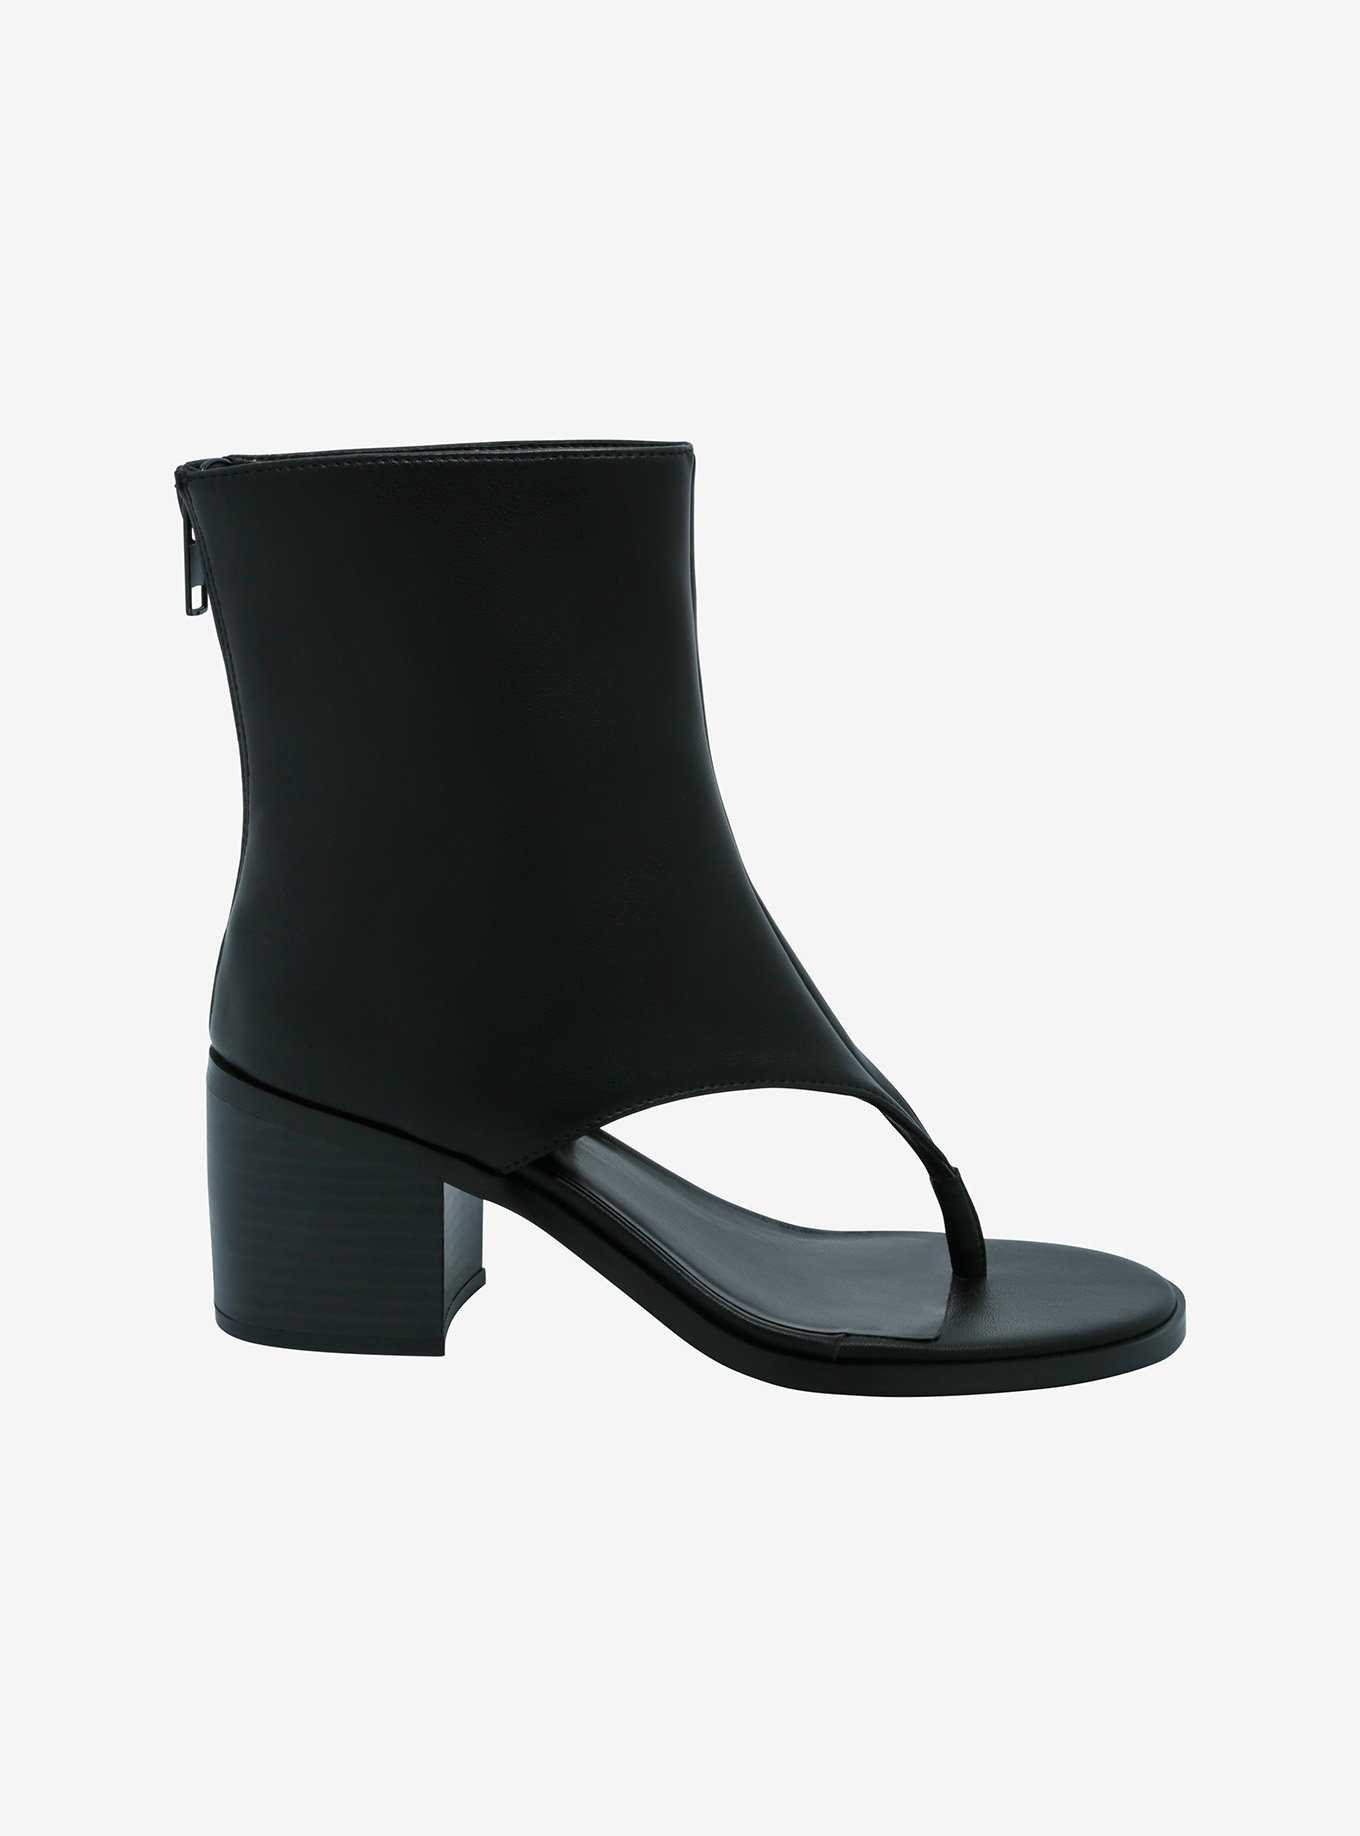 Azalea Wang Black Boot Sandals, , hi-res